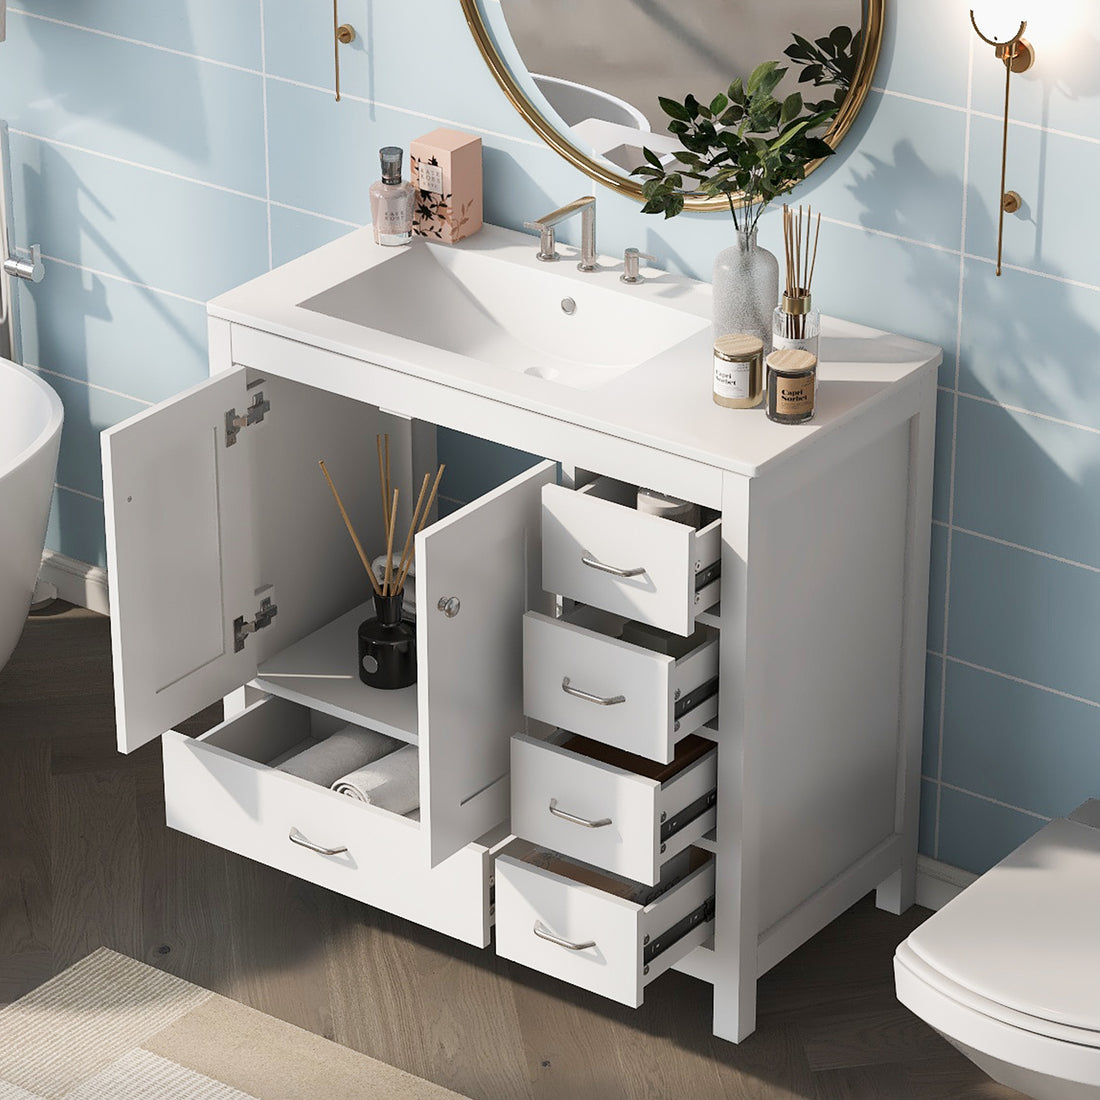 36" White Bathroom Vanity with Ceramic Sink Combo